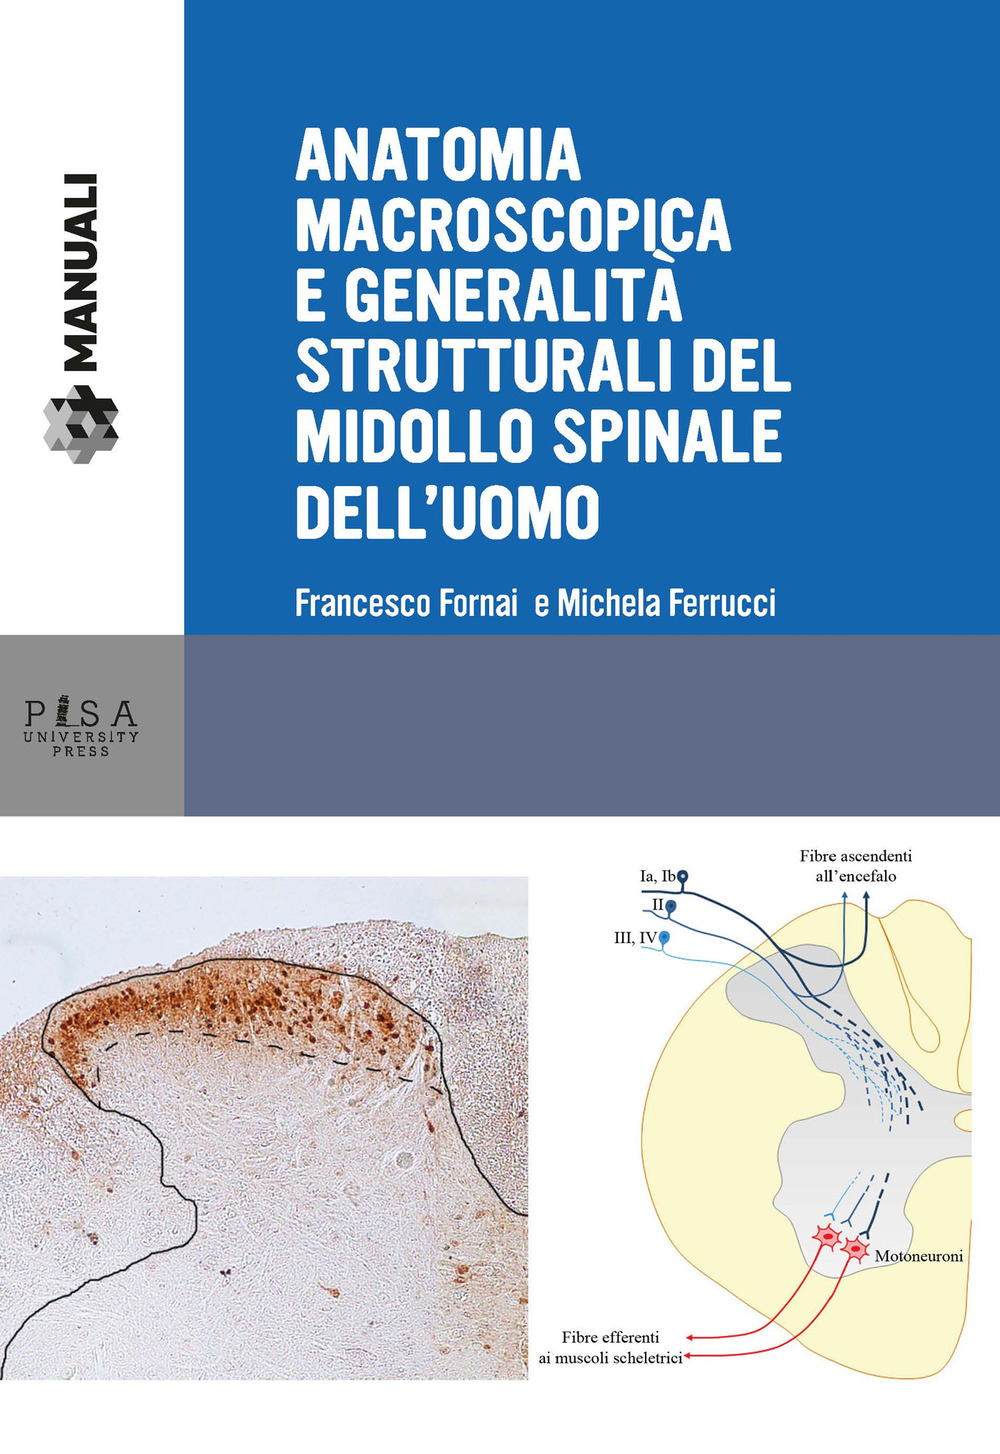 Anatomia macroscopica e generalità strutturali del midollo spinale dell'uomo